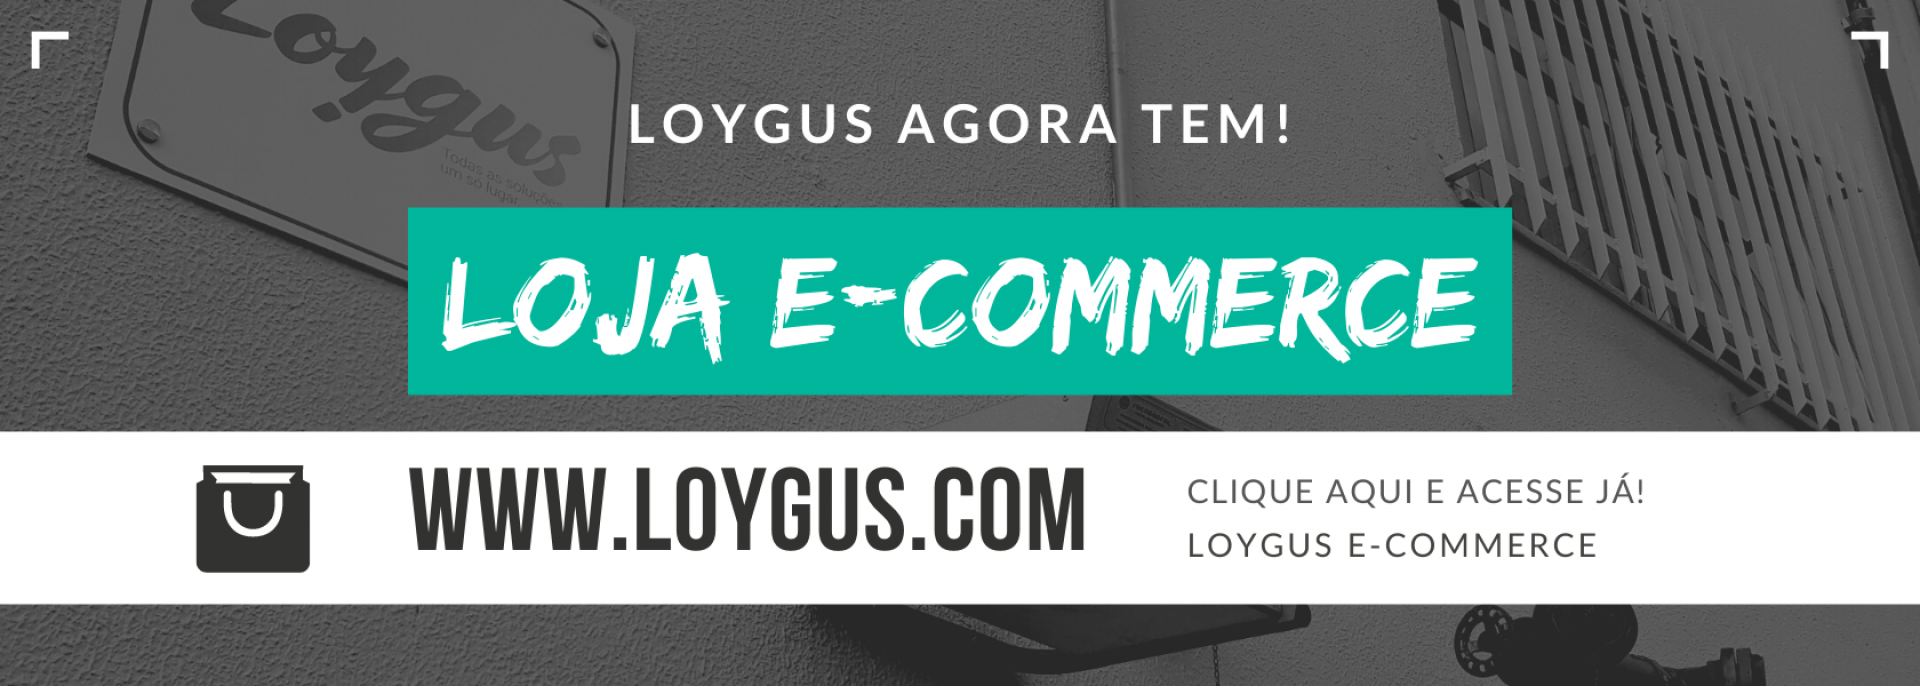 LOYGUS E-COMMERCE